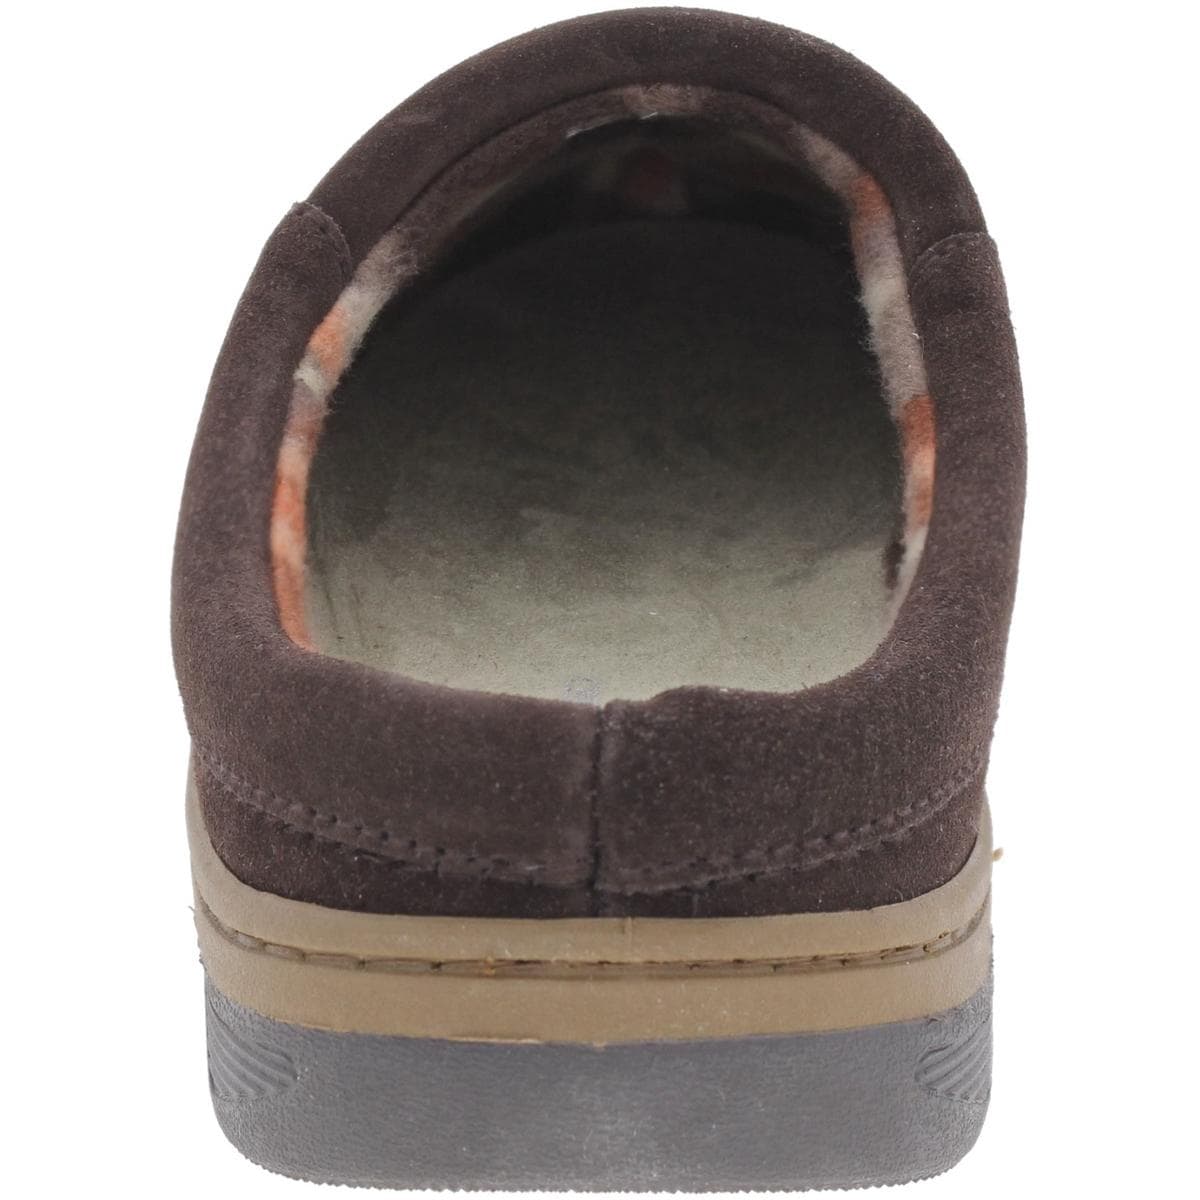 rockport premium indoor outdoor slippers